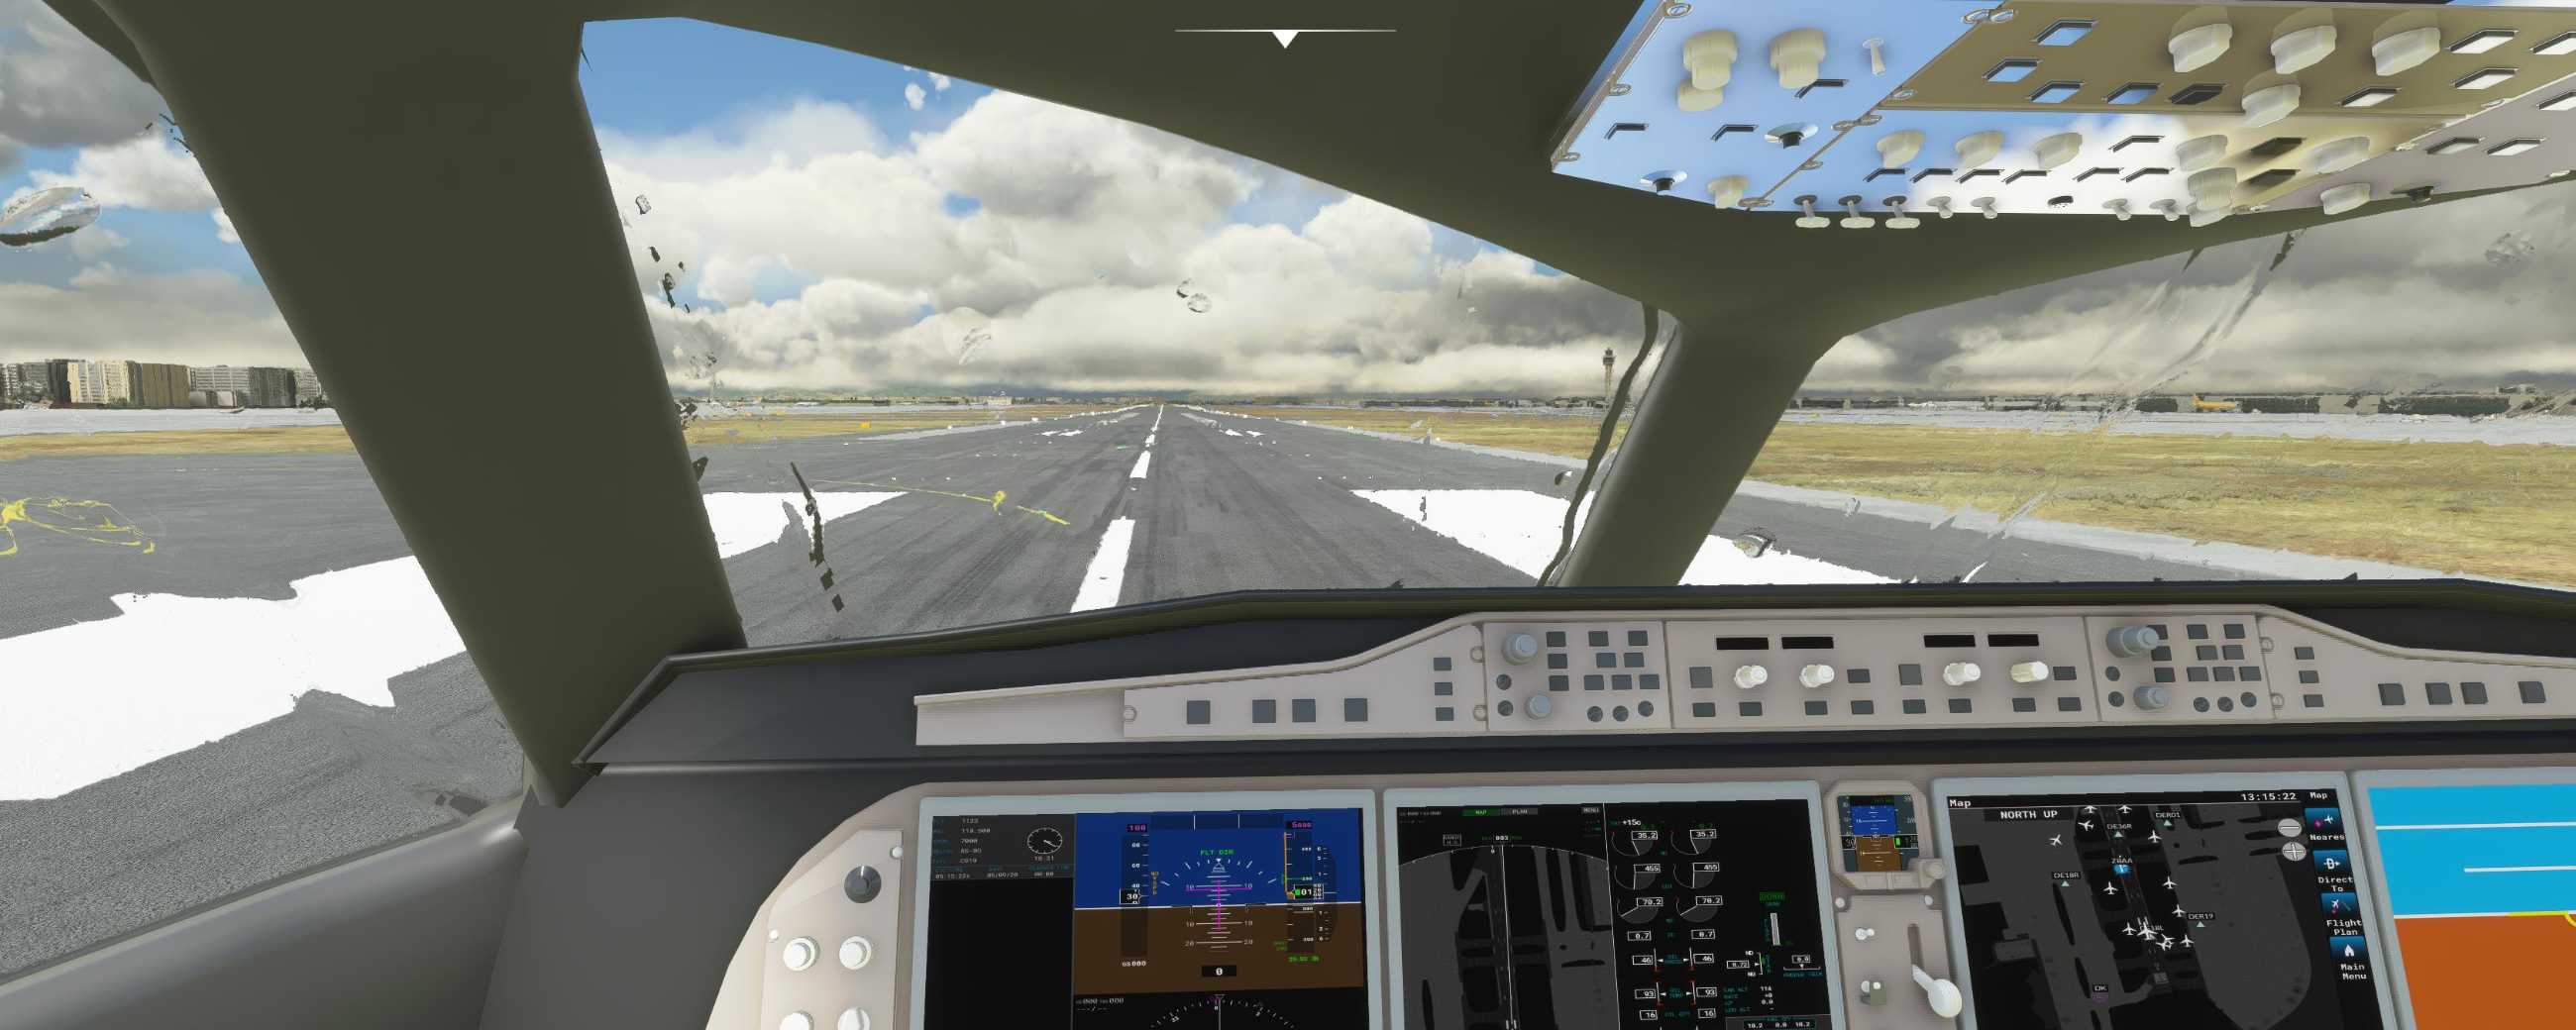 FYCYC-C919 国产大飞机机模 微软模拟飞行演示-4411 